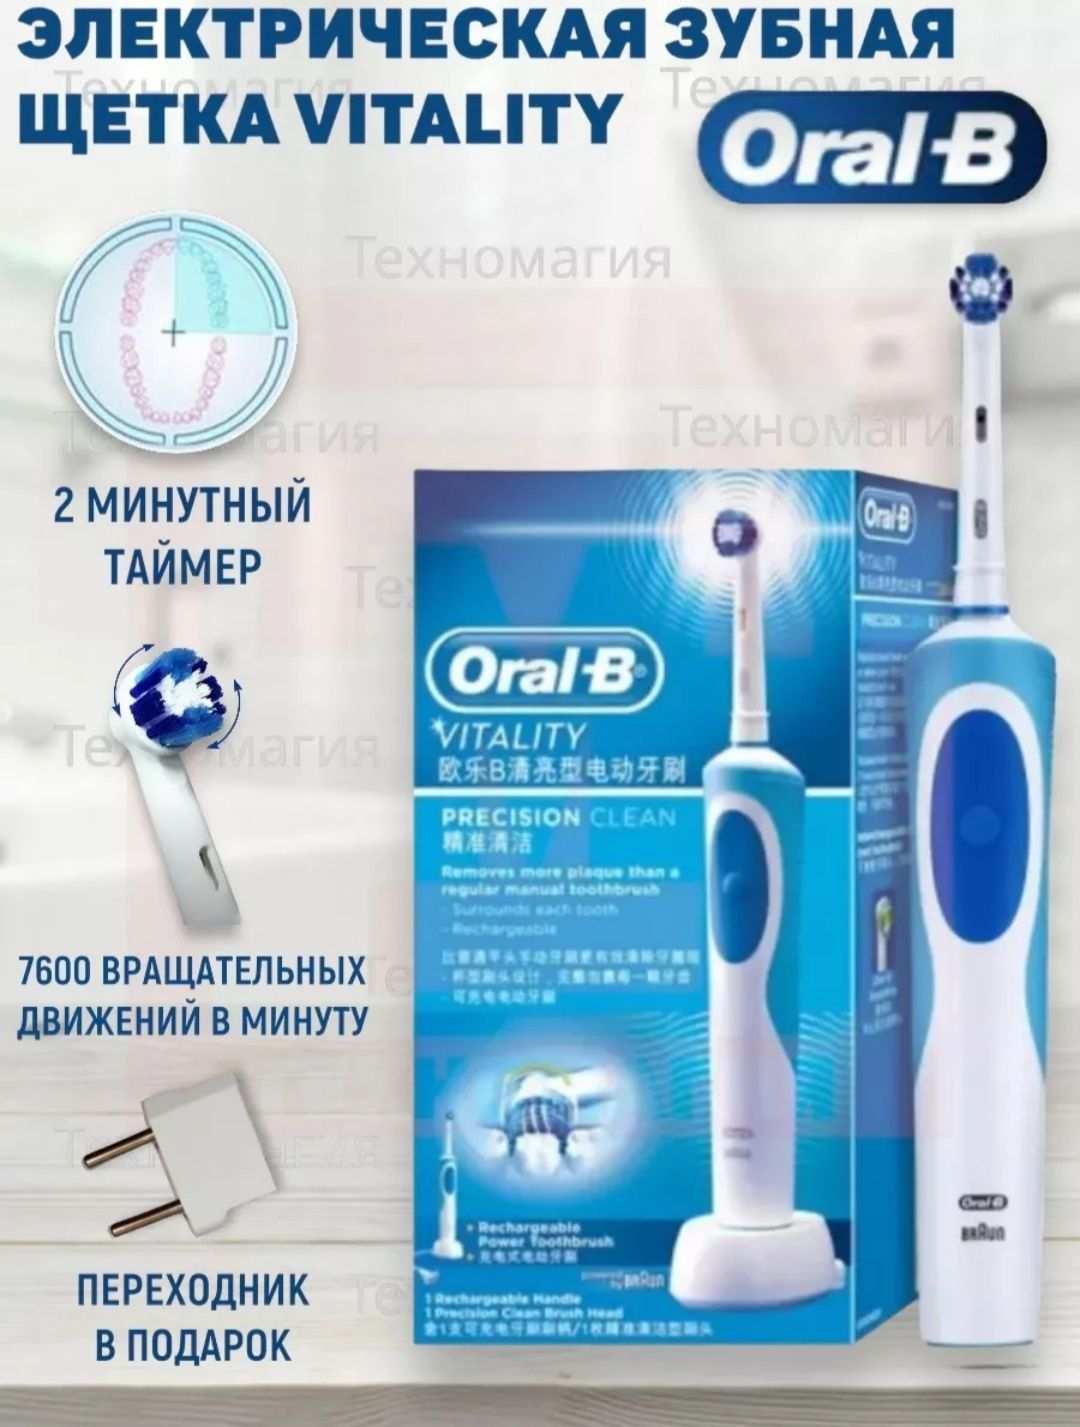 Зубная щётка Oral-b vitality